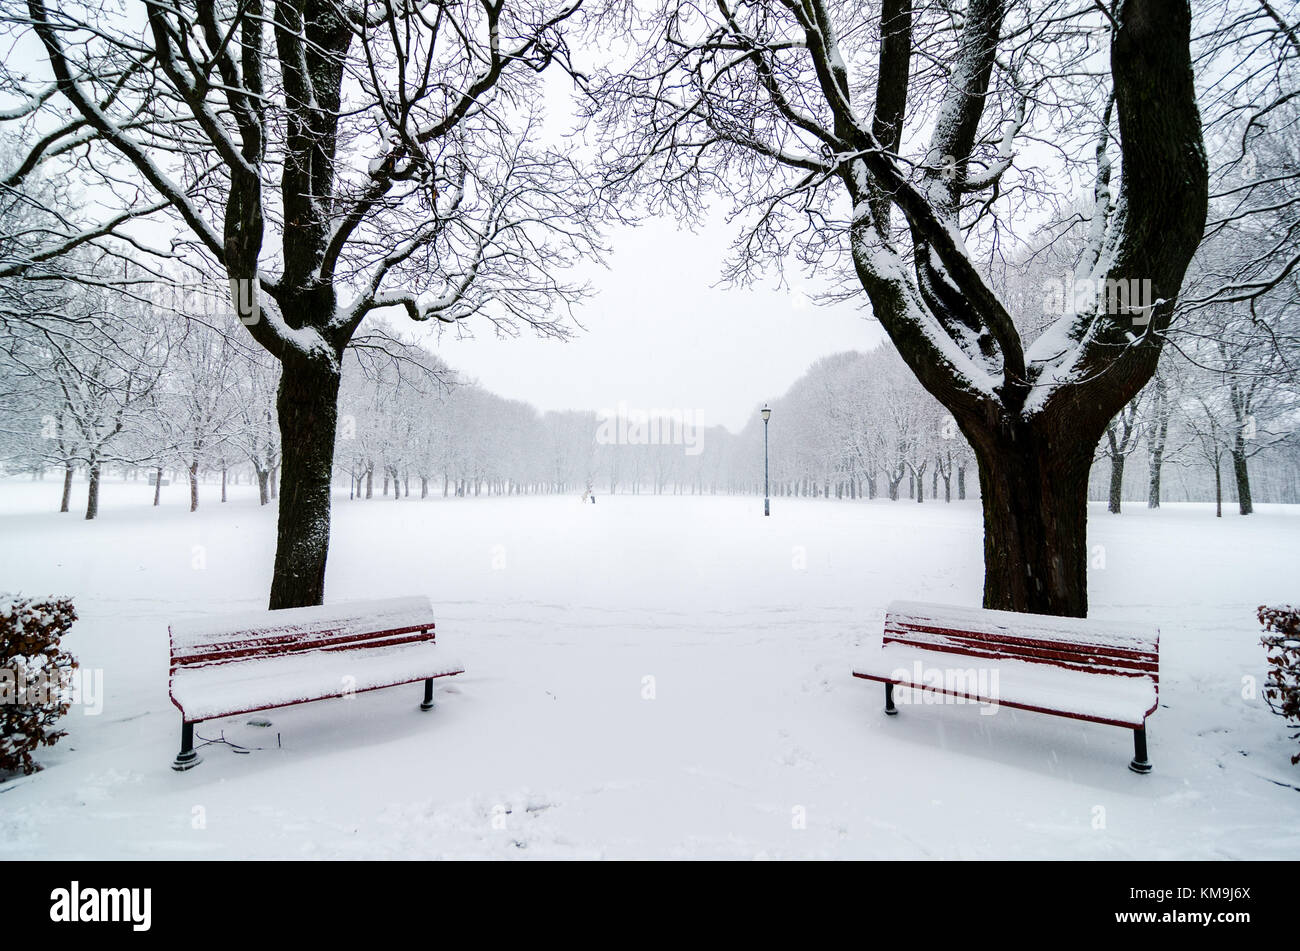 Deux bancs de parc pendant une chute de neige. Couvert de neige. L'alignement d'arbres. Légende symétrique Banque D'Images